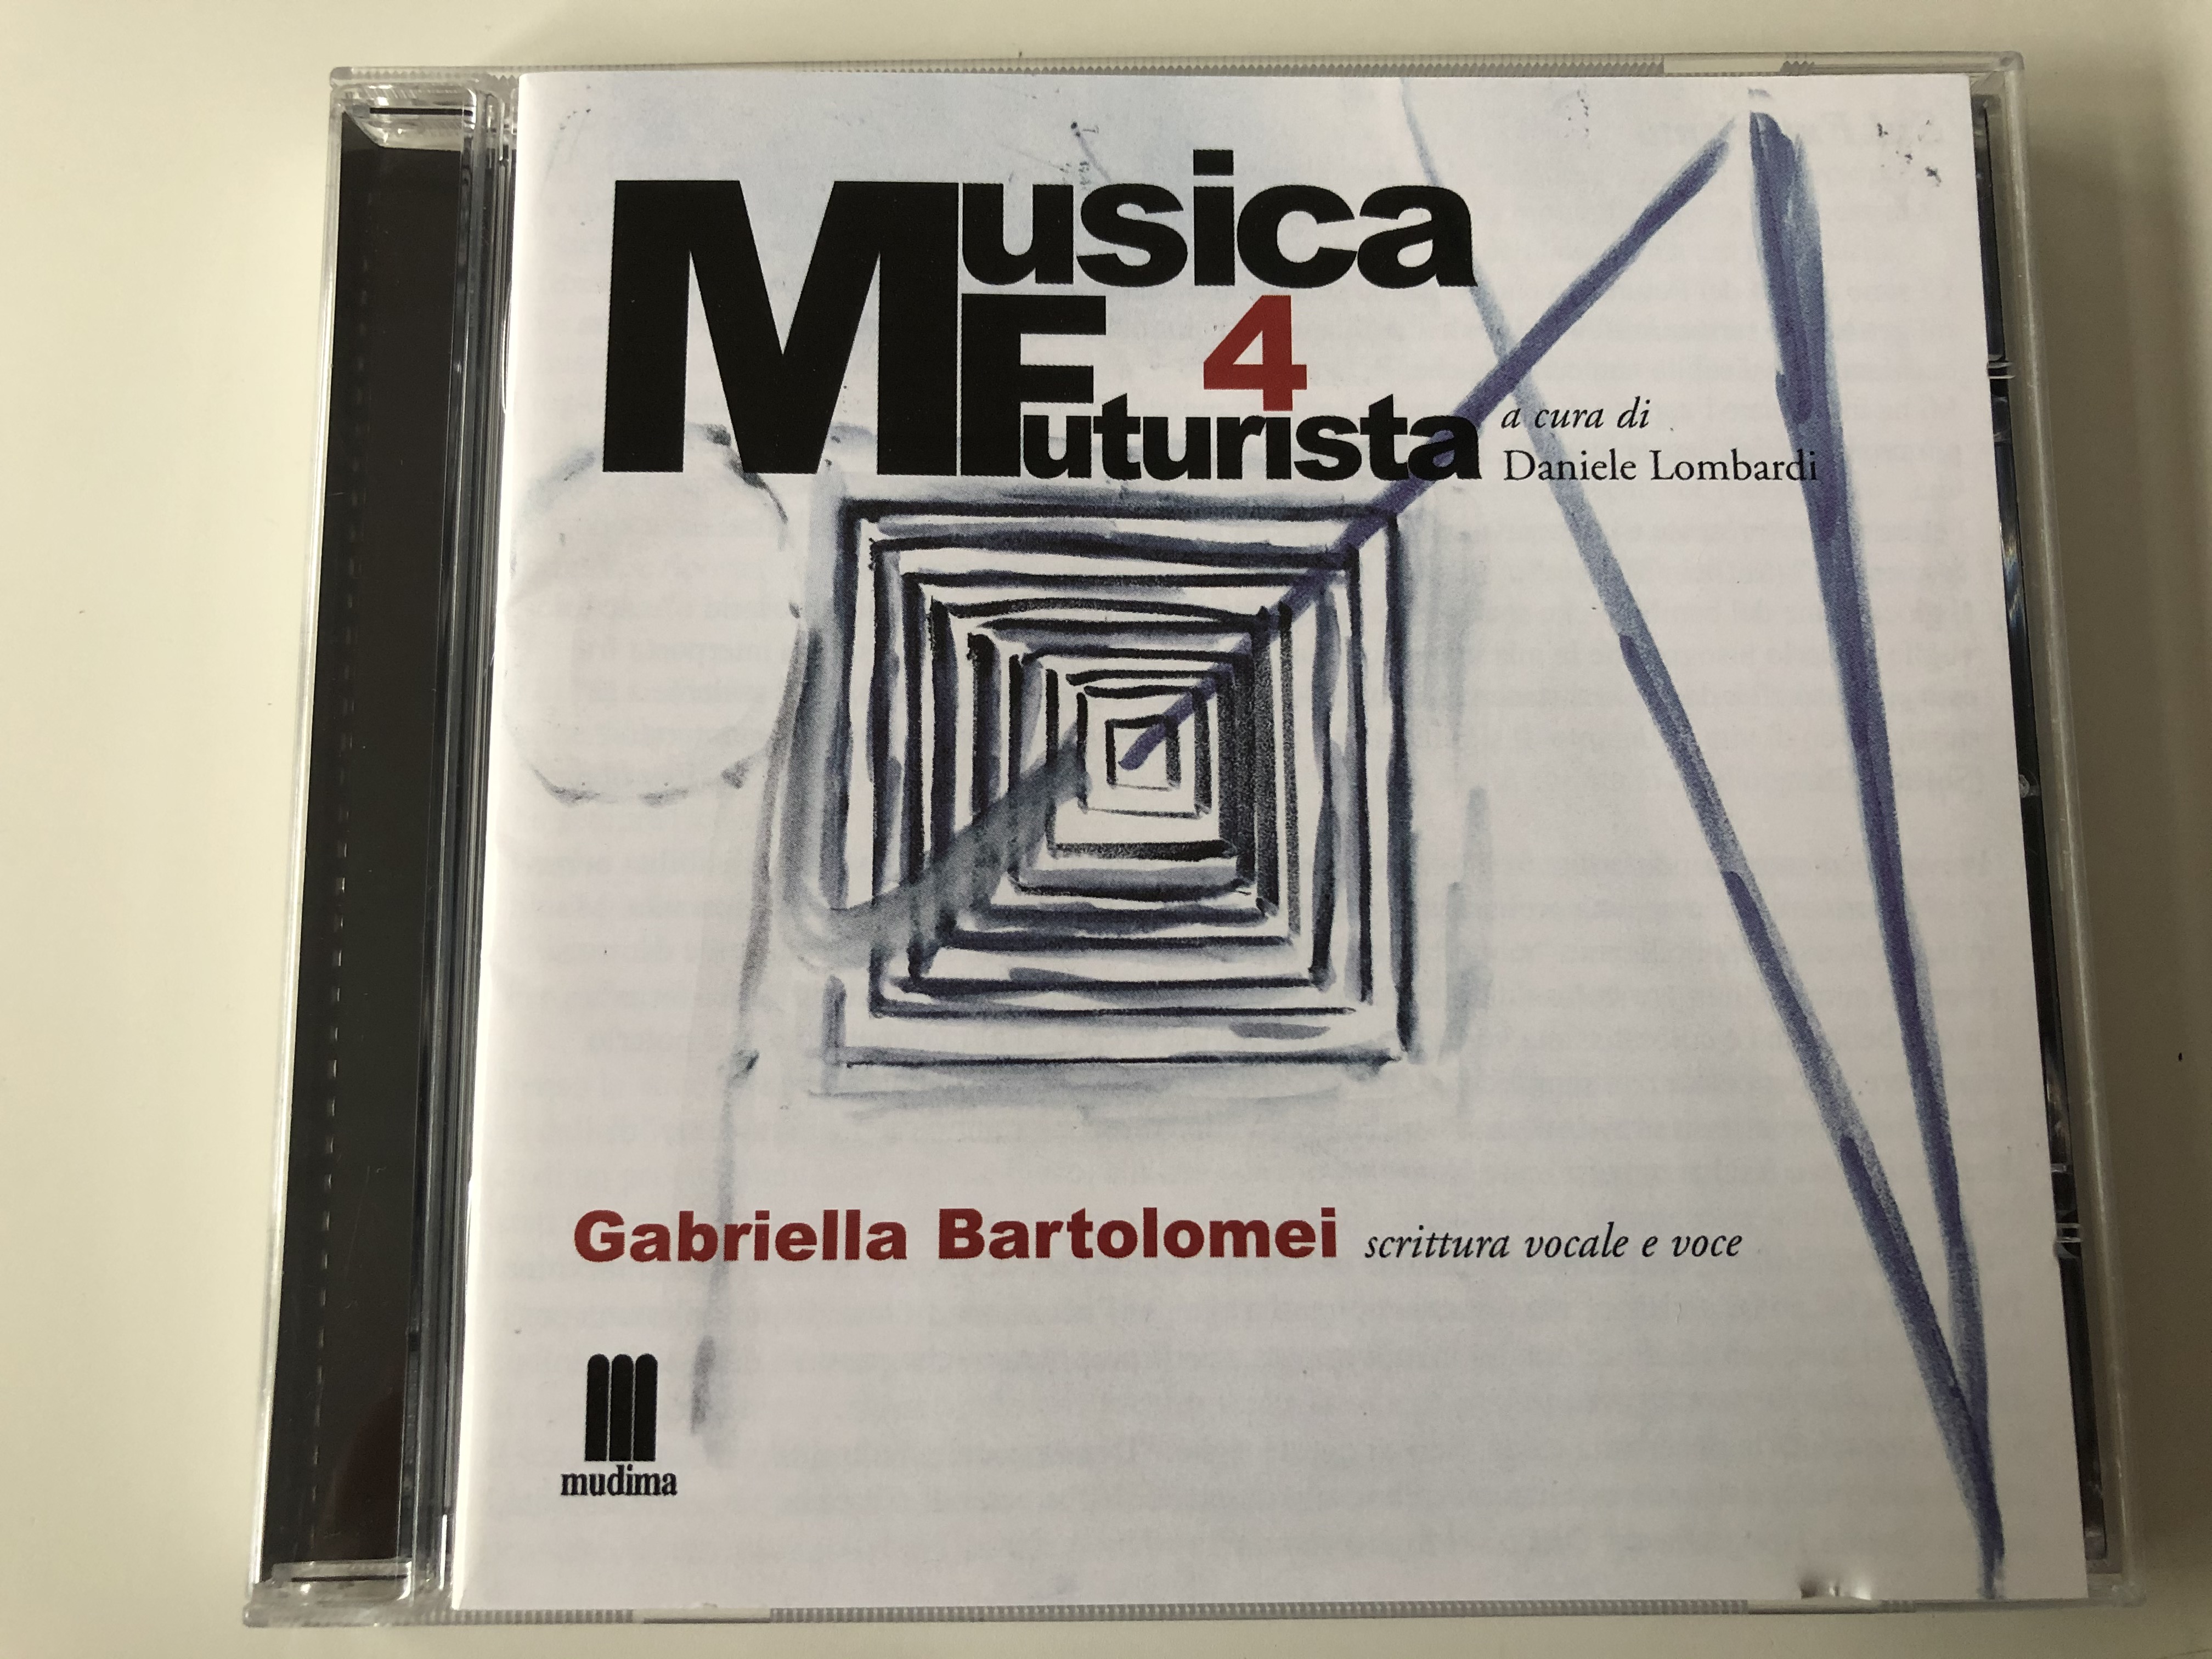 musica-futurista-4-a-cura-di-daniele-lombardi-gabriella-bartolomei-scrittura-vocale-e-voce-mudima-ed.-musicali-audio-cd-2010-8033224410296-1-.jpg